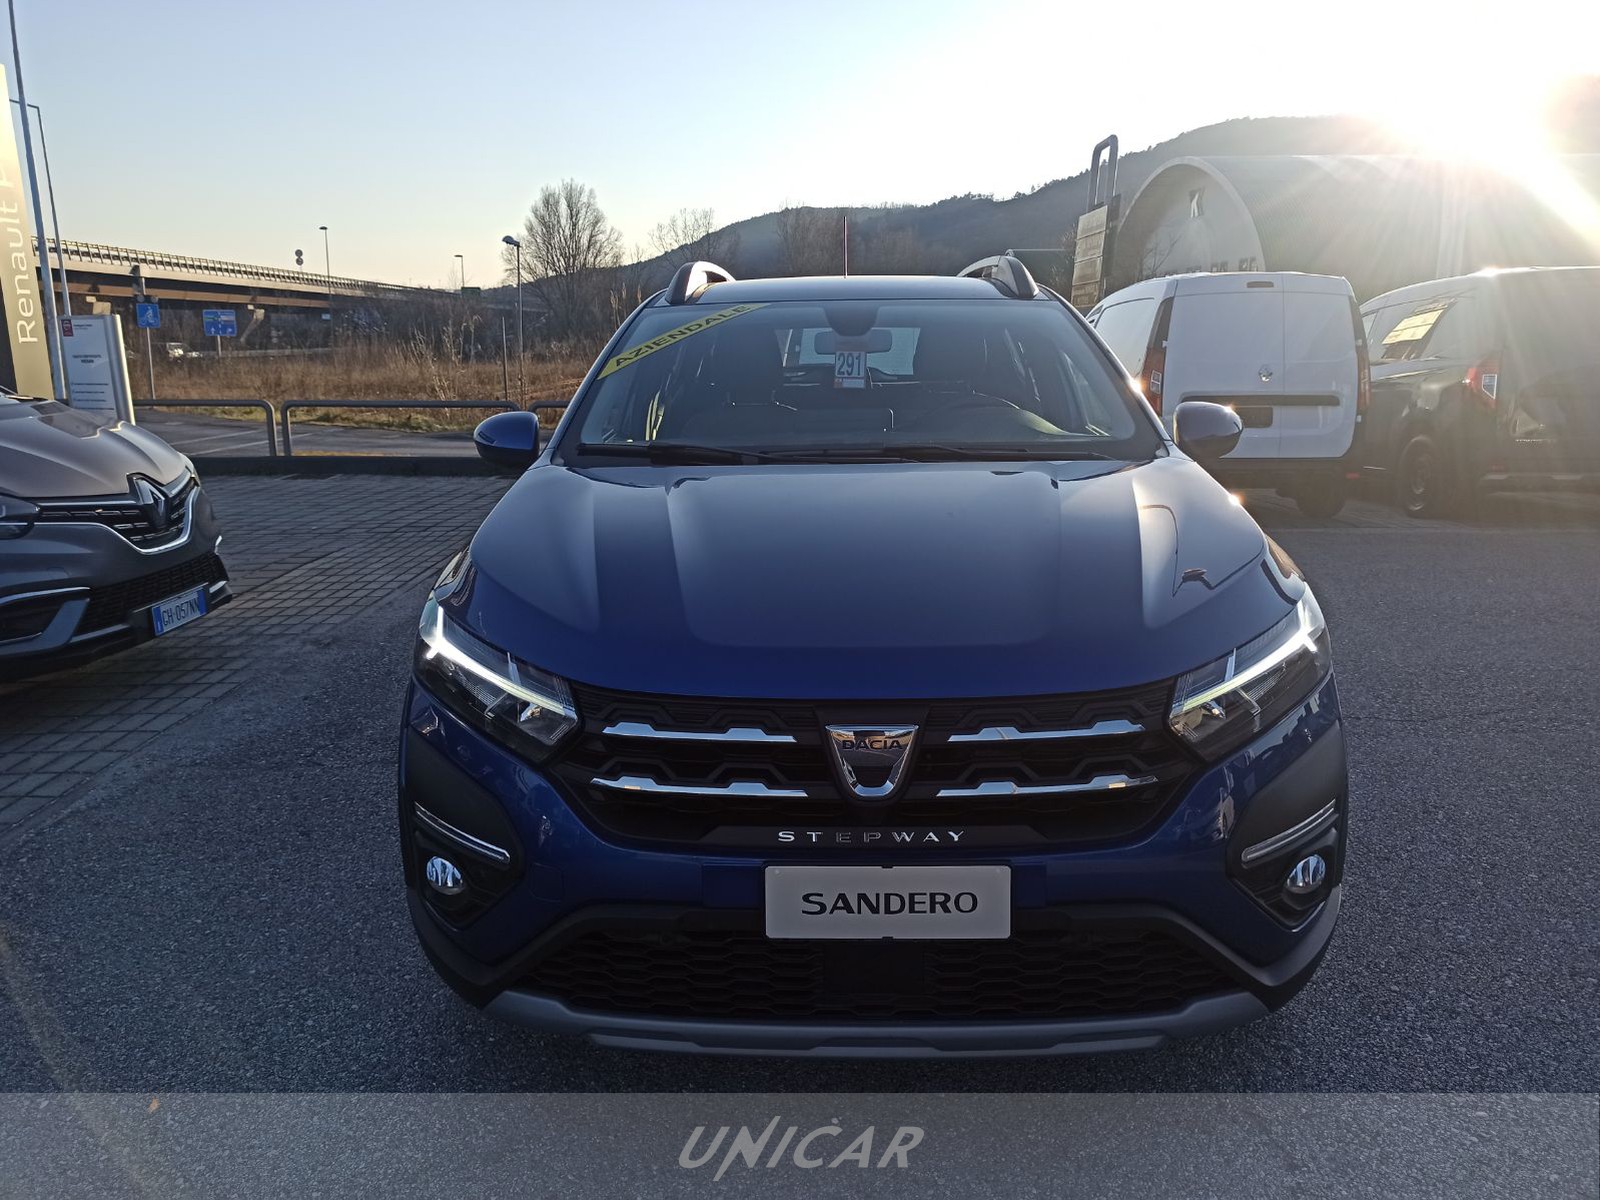 UNICAR Dacia Sandero